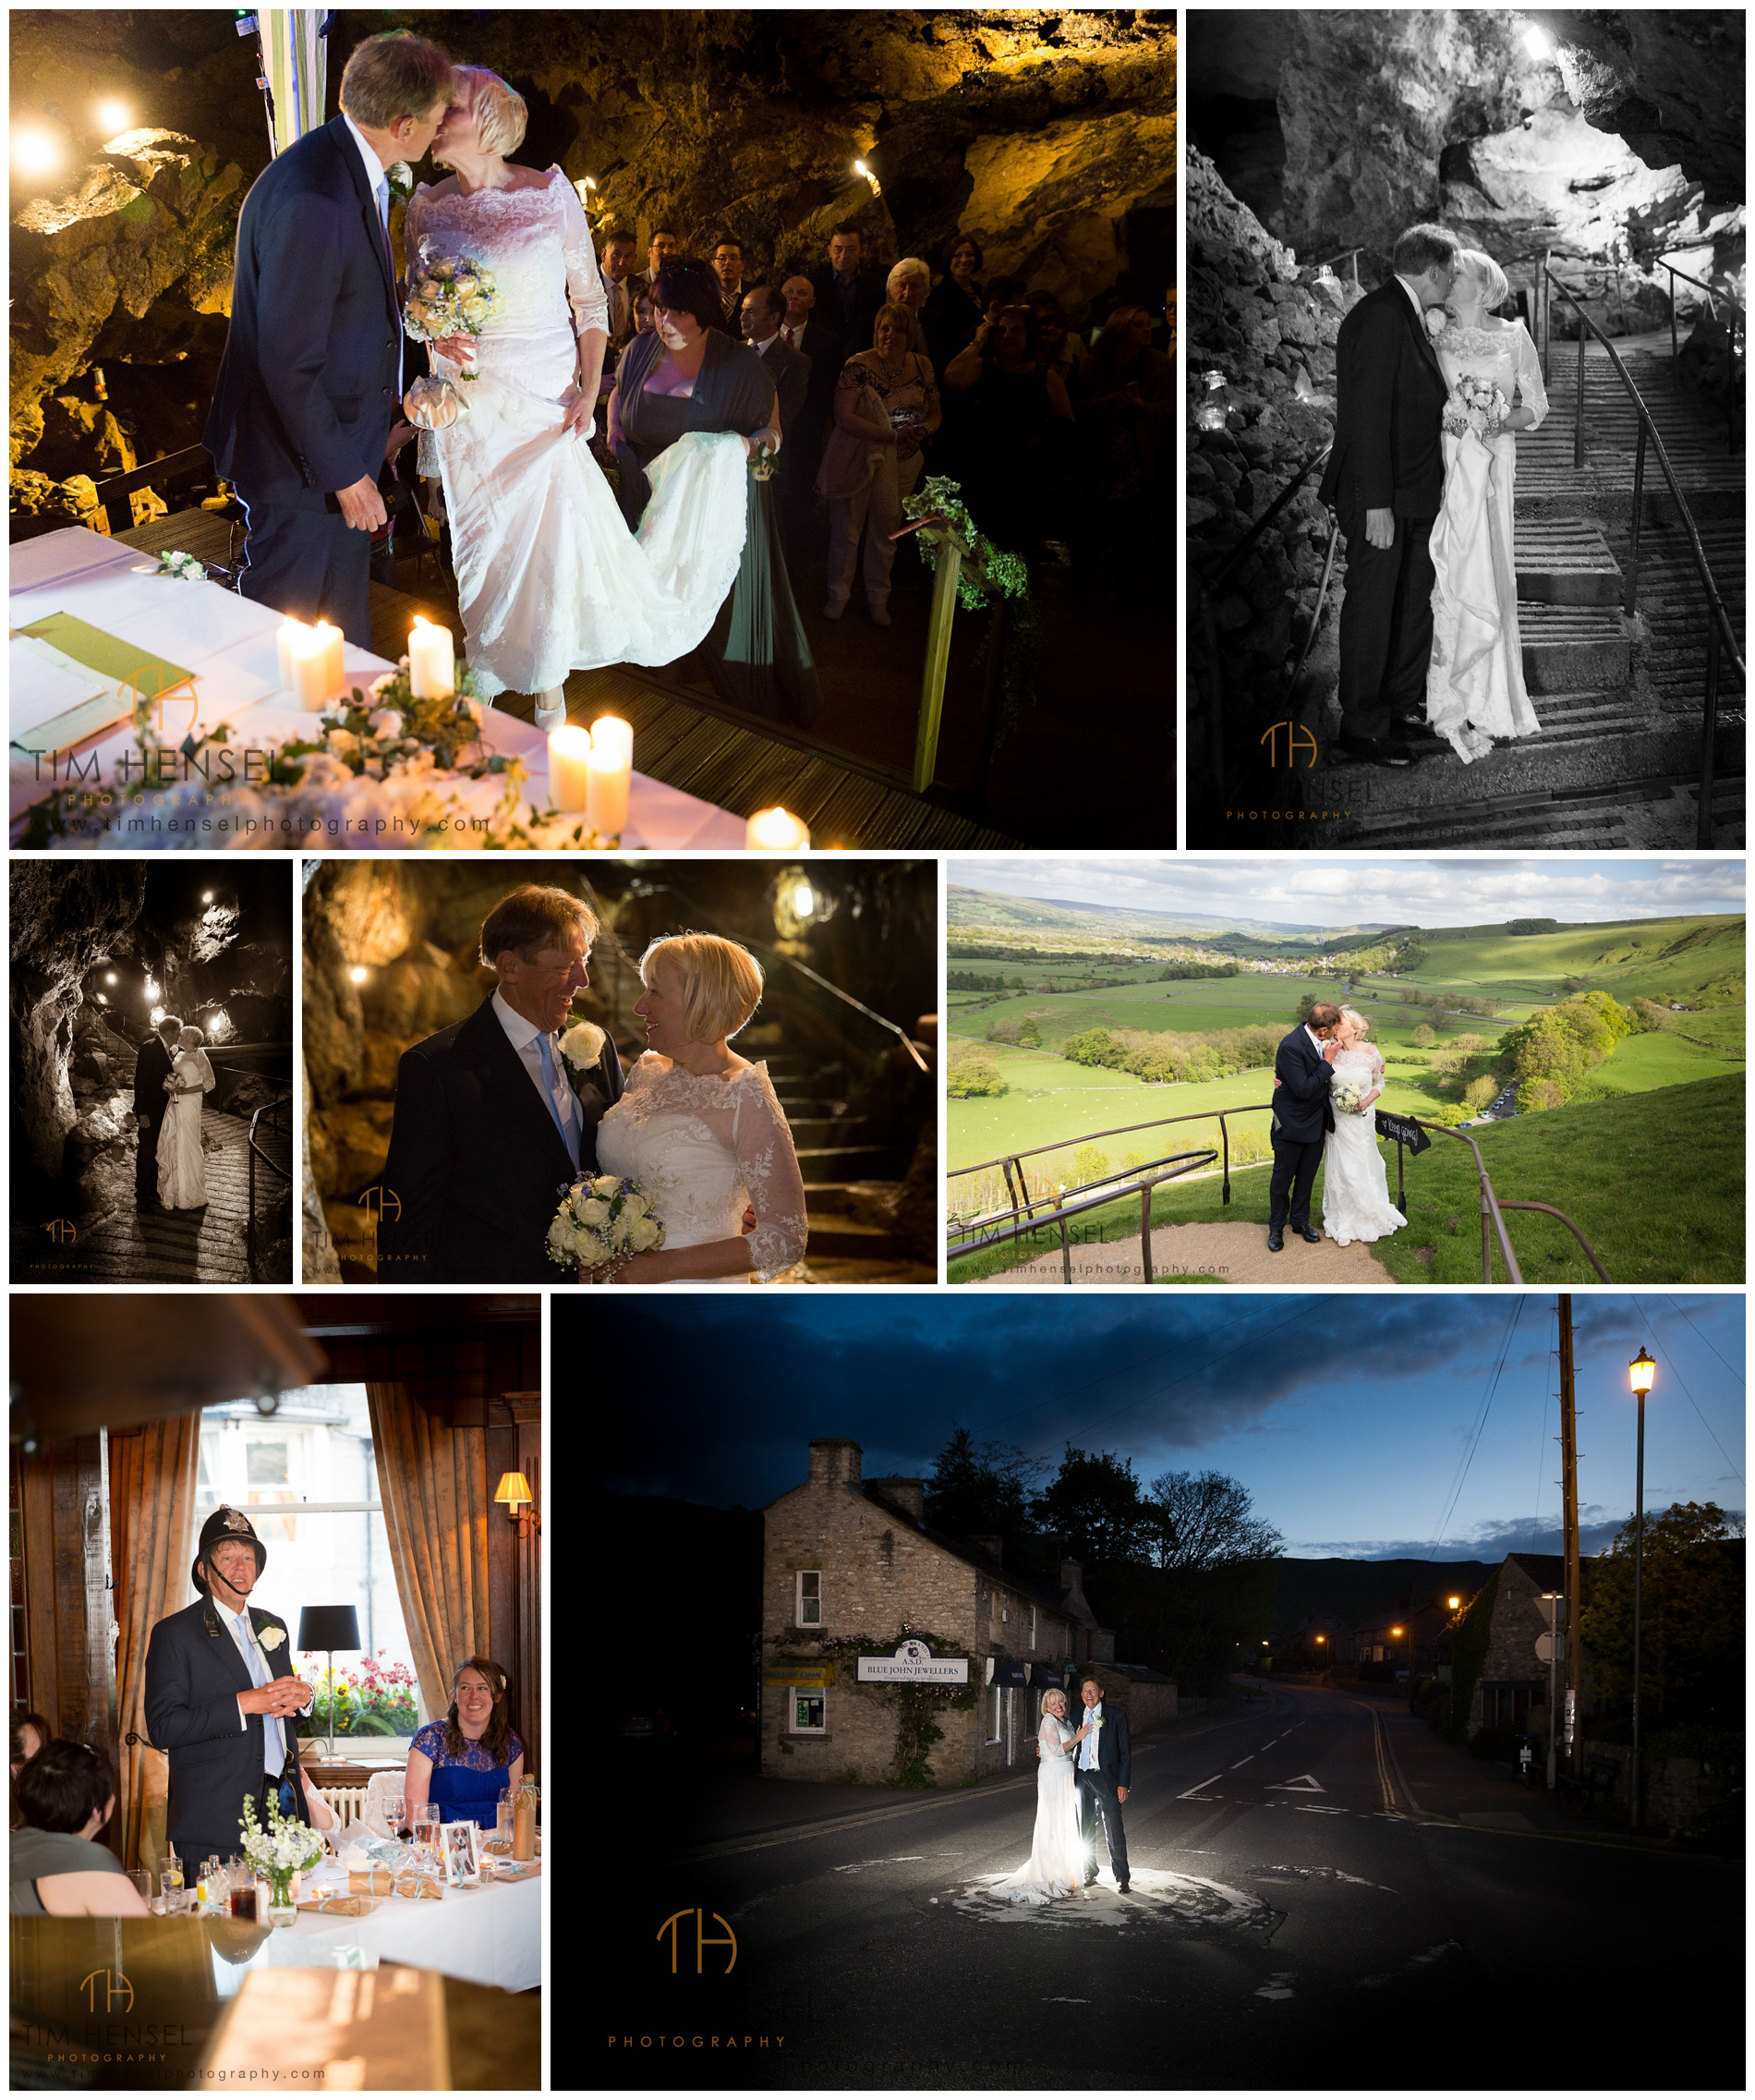 Wedding photos in Treak Cliff Cavern in Castleton, derbyshire